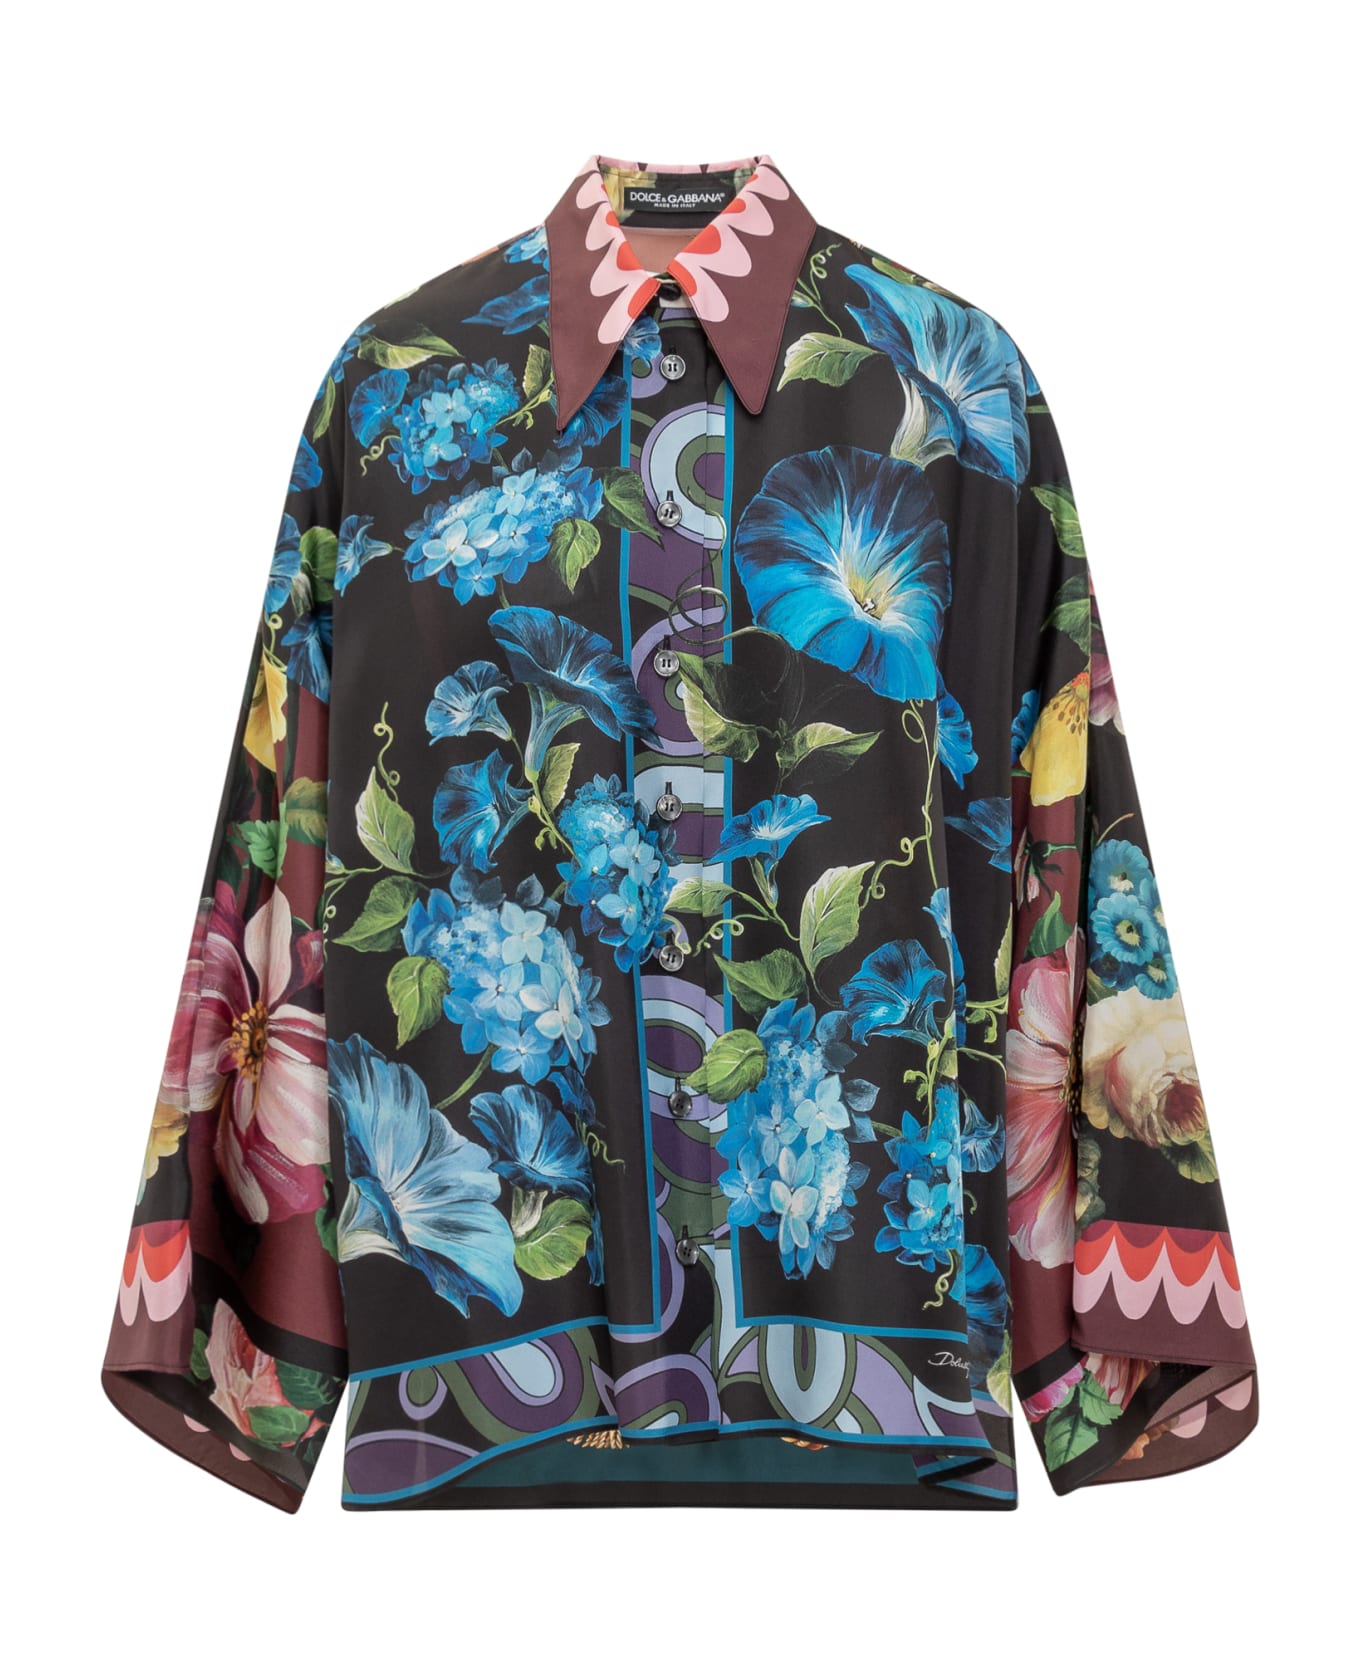 Dolce & Gabbana Floral Print Shirt - Variante Abbinata